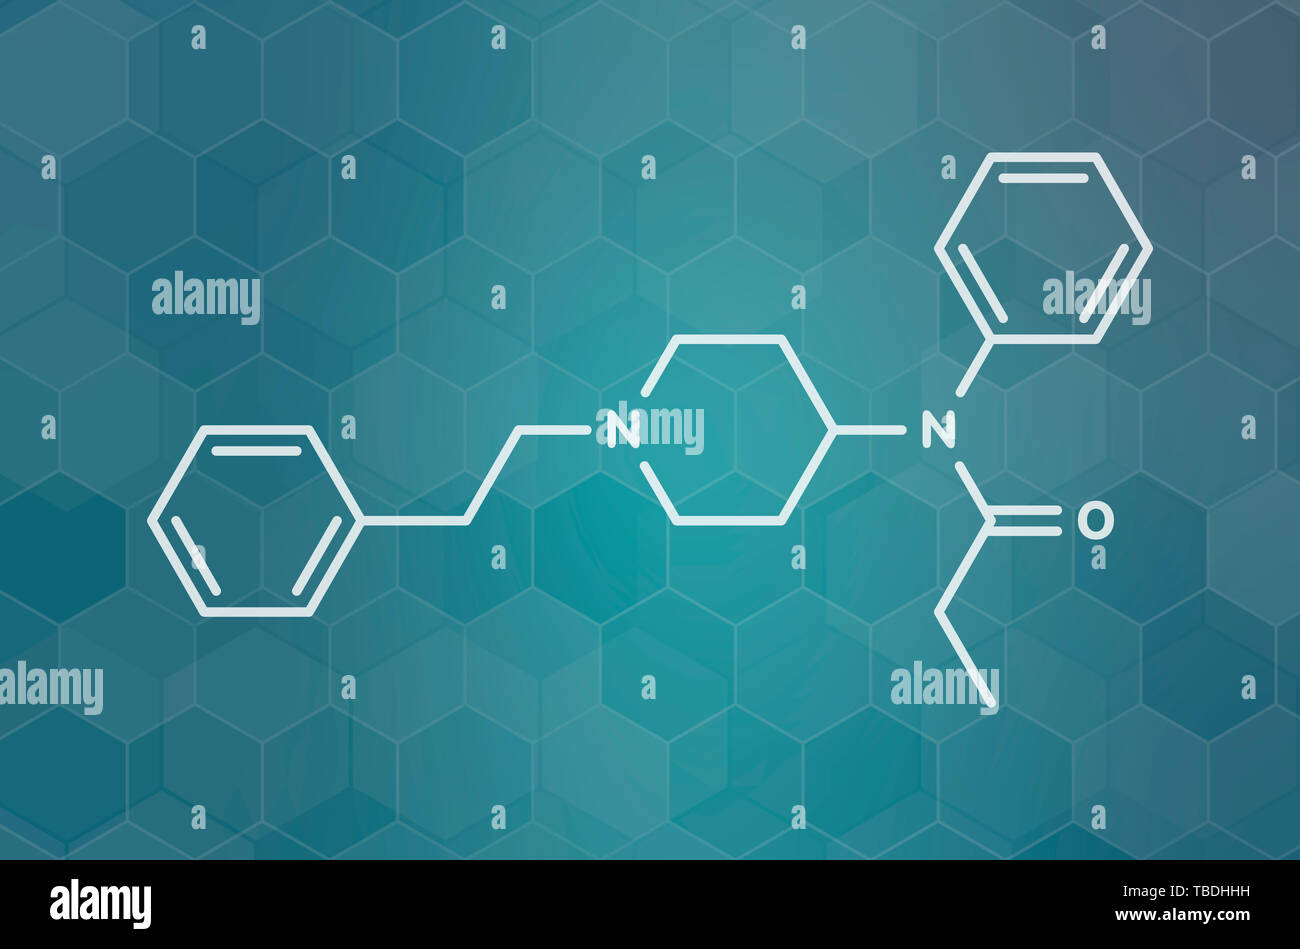 Fentanil (fentanyl) molécule du médicament analgésique opioïde. White formule topologique sur dark teal background avec modèle hexagonal. Banque D'Images